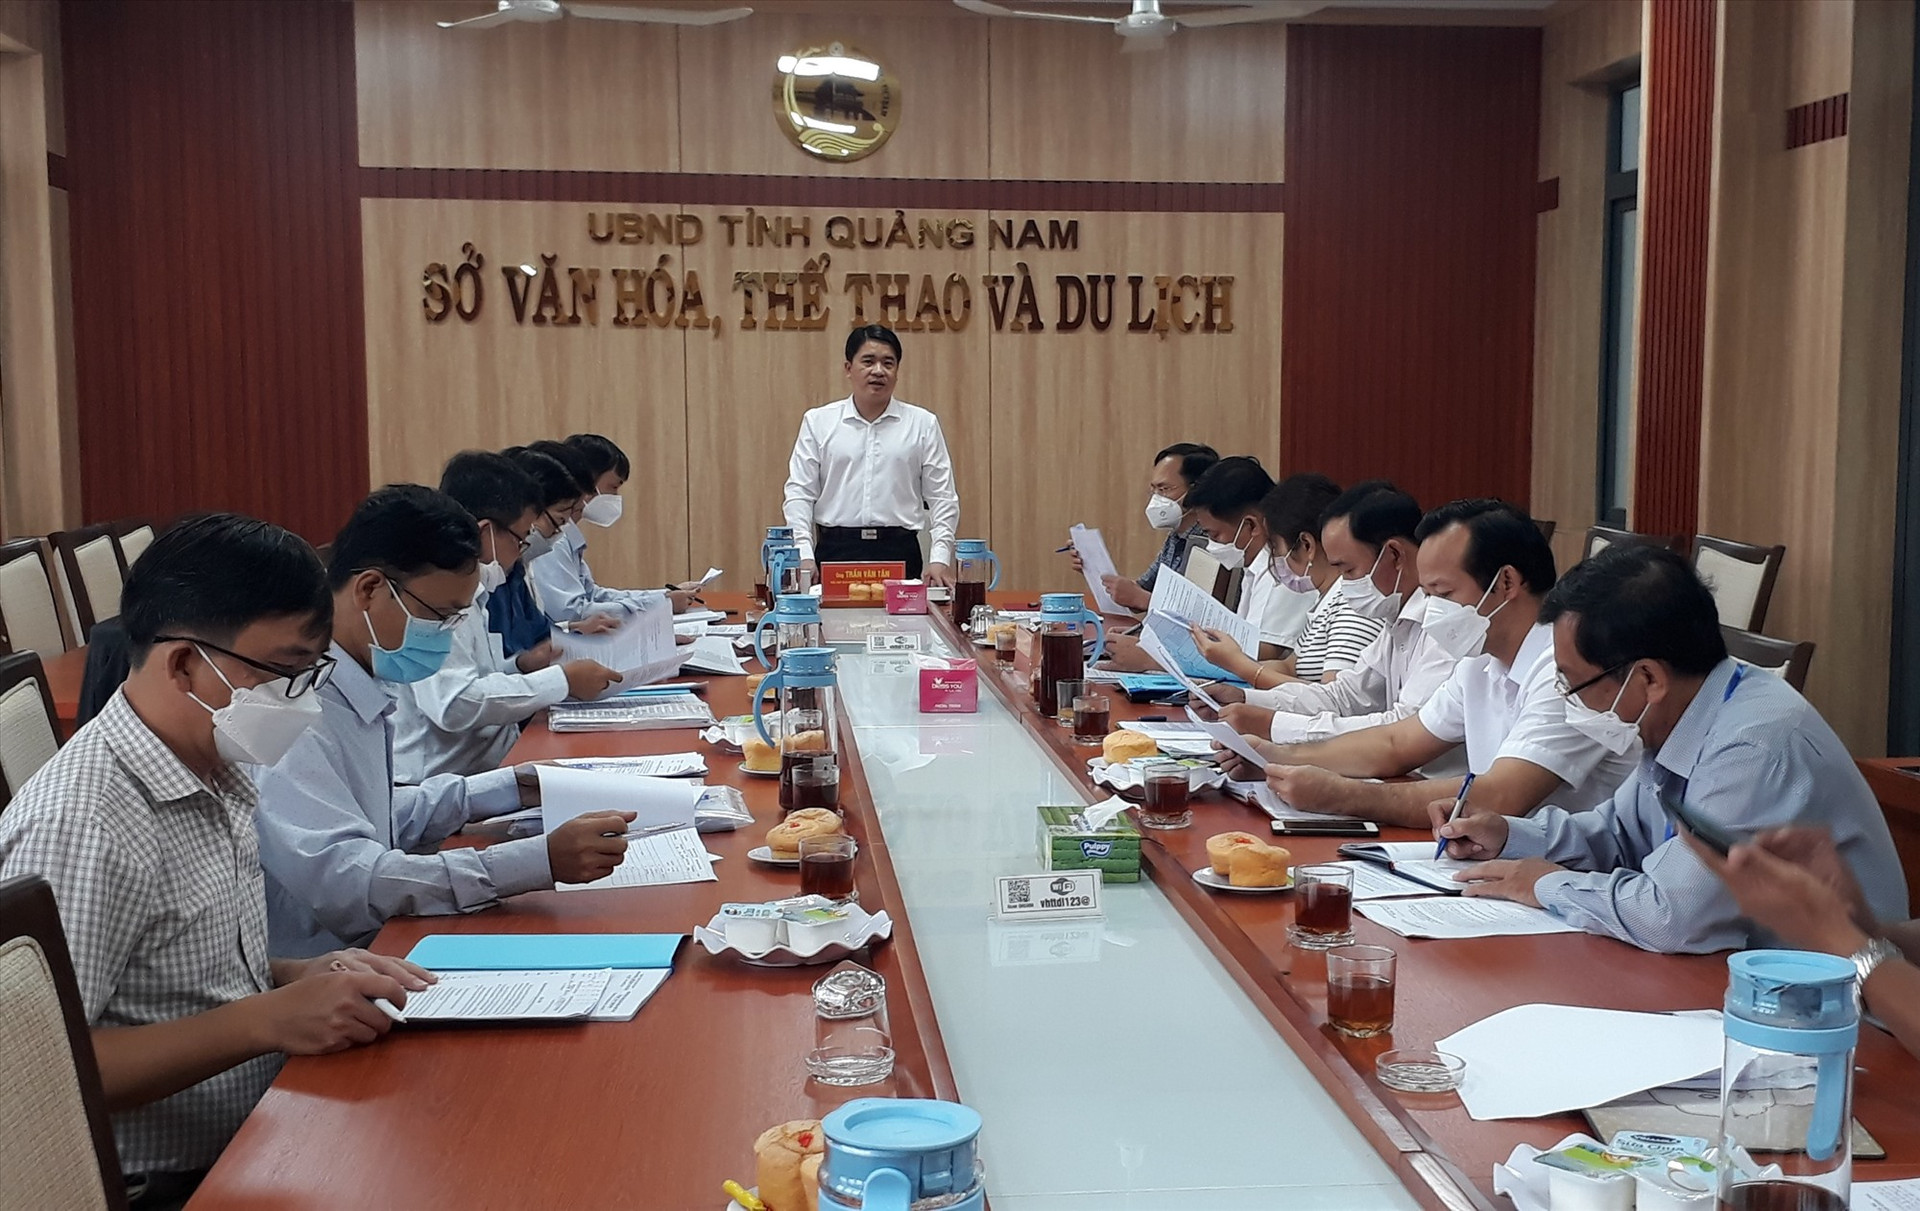 Phó Chủ tịch UBND tỉnh Trần Văn Tân kết luận cuộc làm việc với Sở VH-TT&DL. Ảnh: X.P